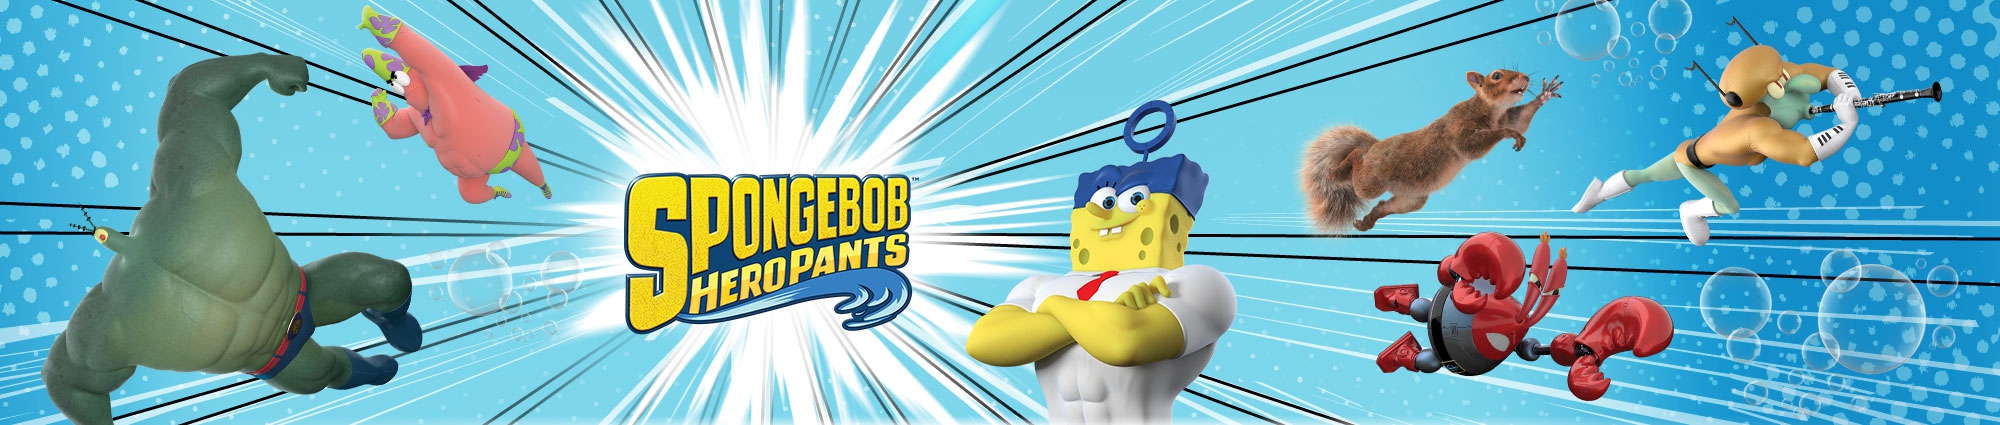 Banner SpongeBob HeroPants